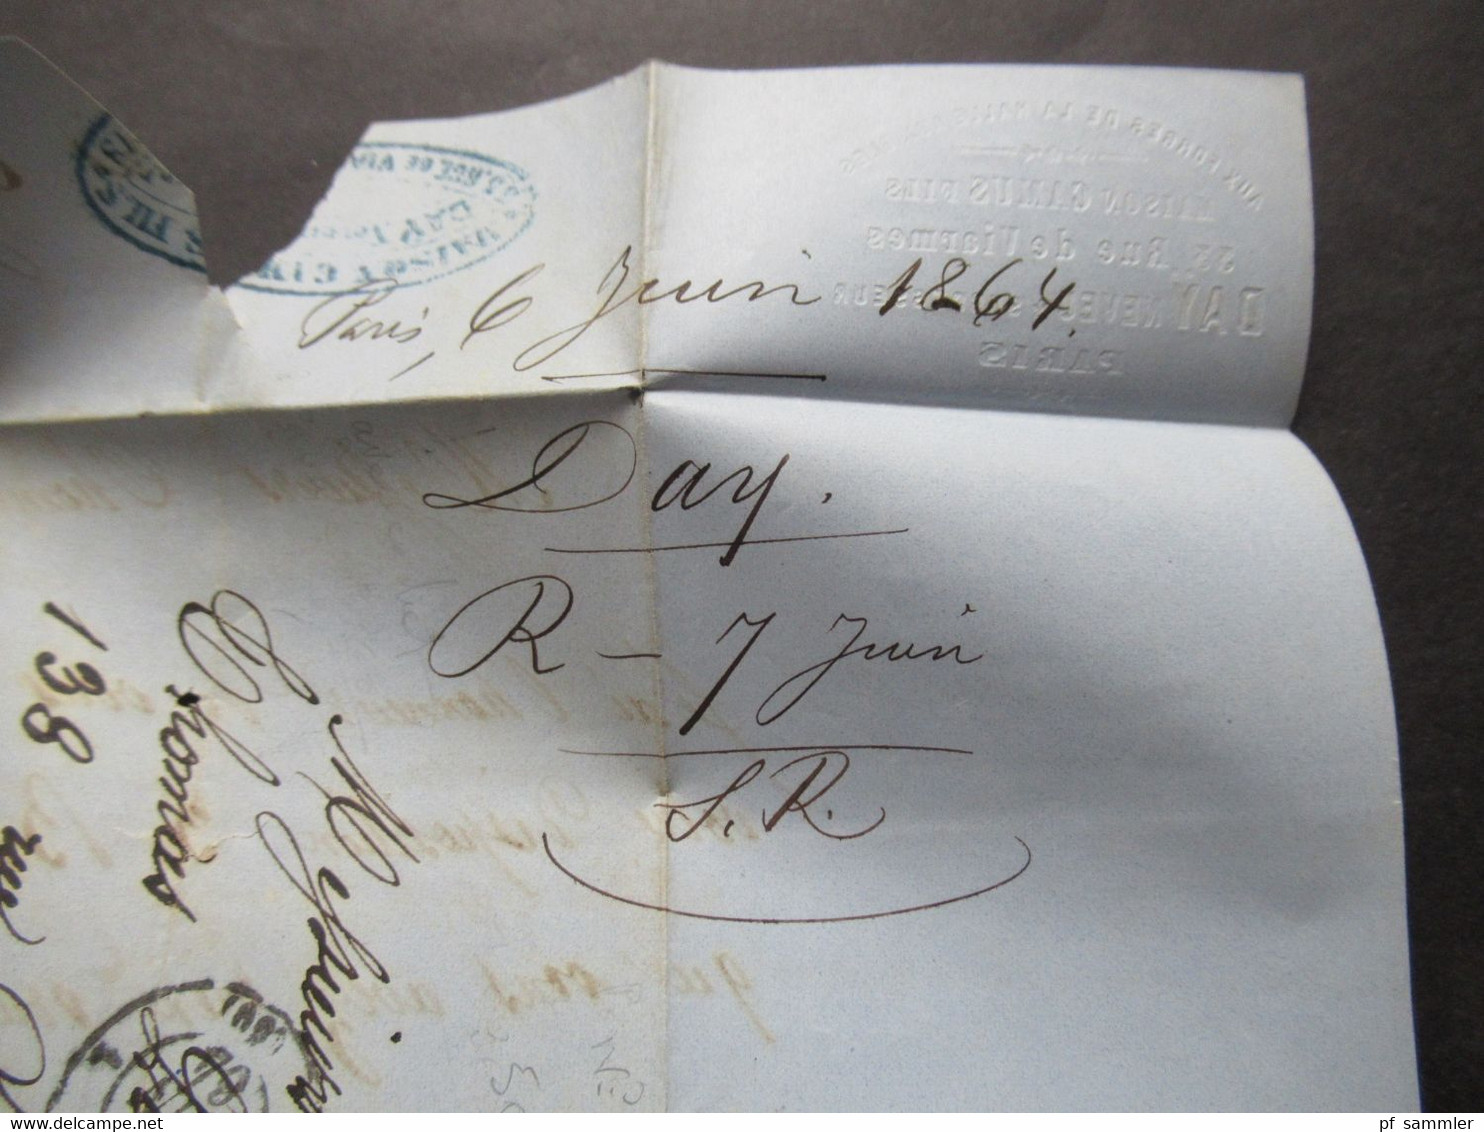 Frankreich 1864 Napoleon III. Michel Nr.20 EF mit Sternstempel Paris Ortsbrief mit Inhalt